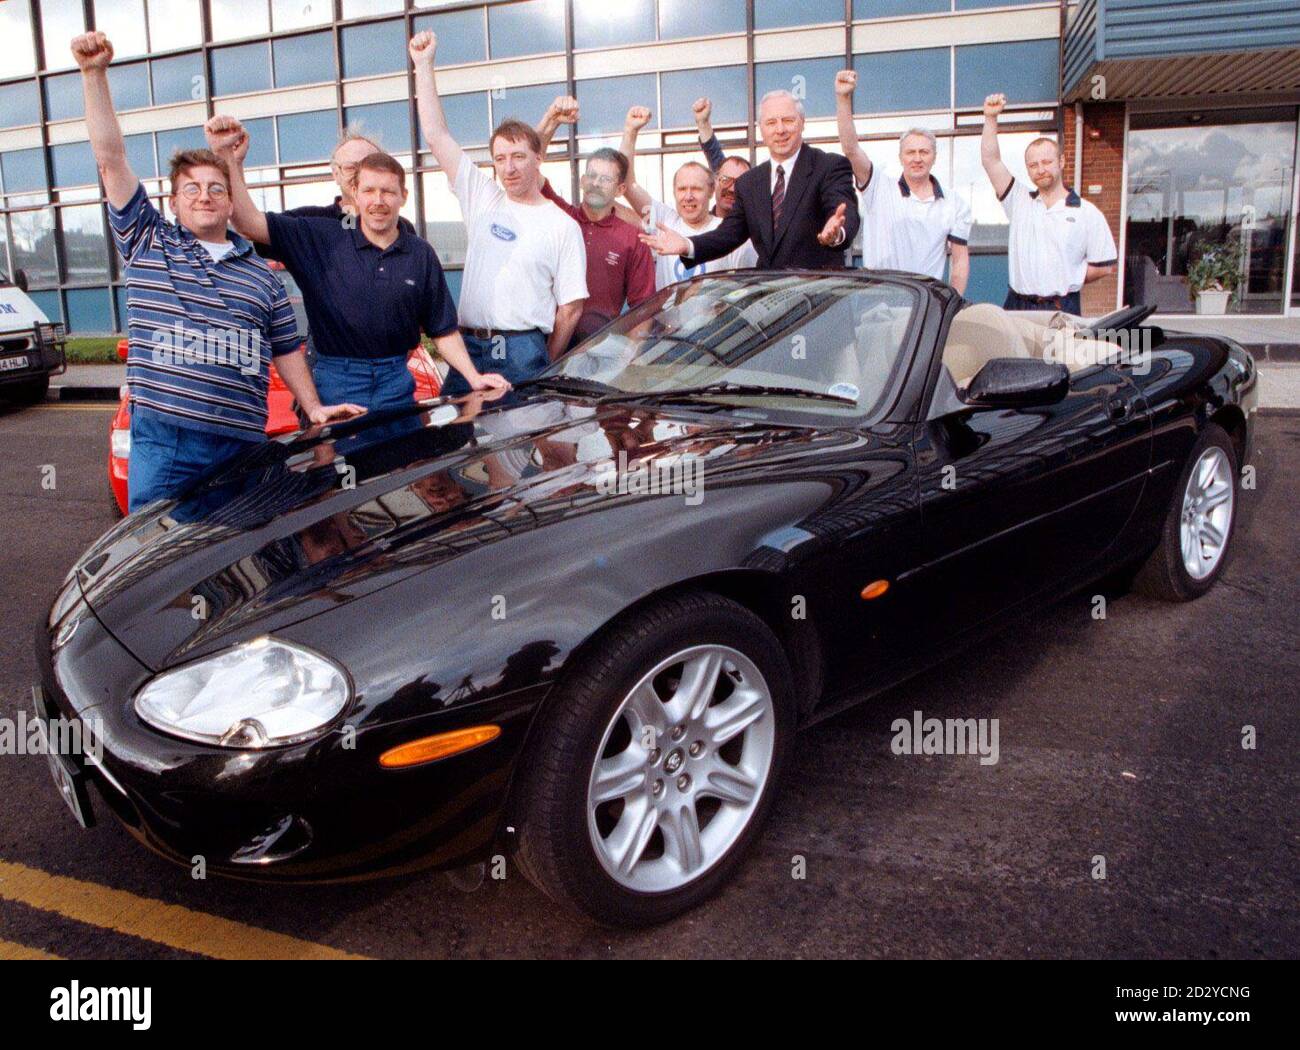 Ford Arbeiter zusammen mit den Werken neuen Betriebsleiter, David Hudson, dunkle Anzug, begrüßen die Nachricht von der Regierung Zuschuss für die Halewood-Anlage, die das neue Baby Jaguar produzieren soll. Pic Dave Kendall. Siehe PA Story INDUSTRY Jaguar. Stockfoto